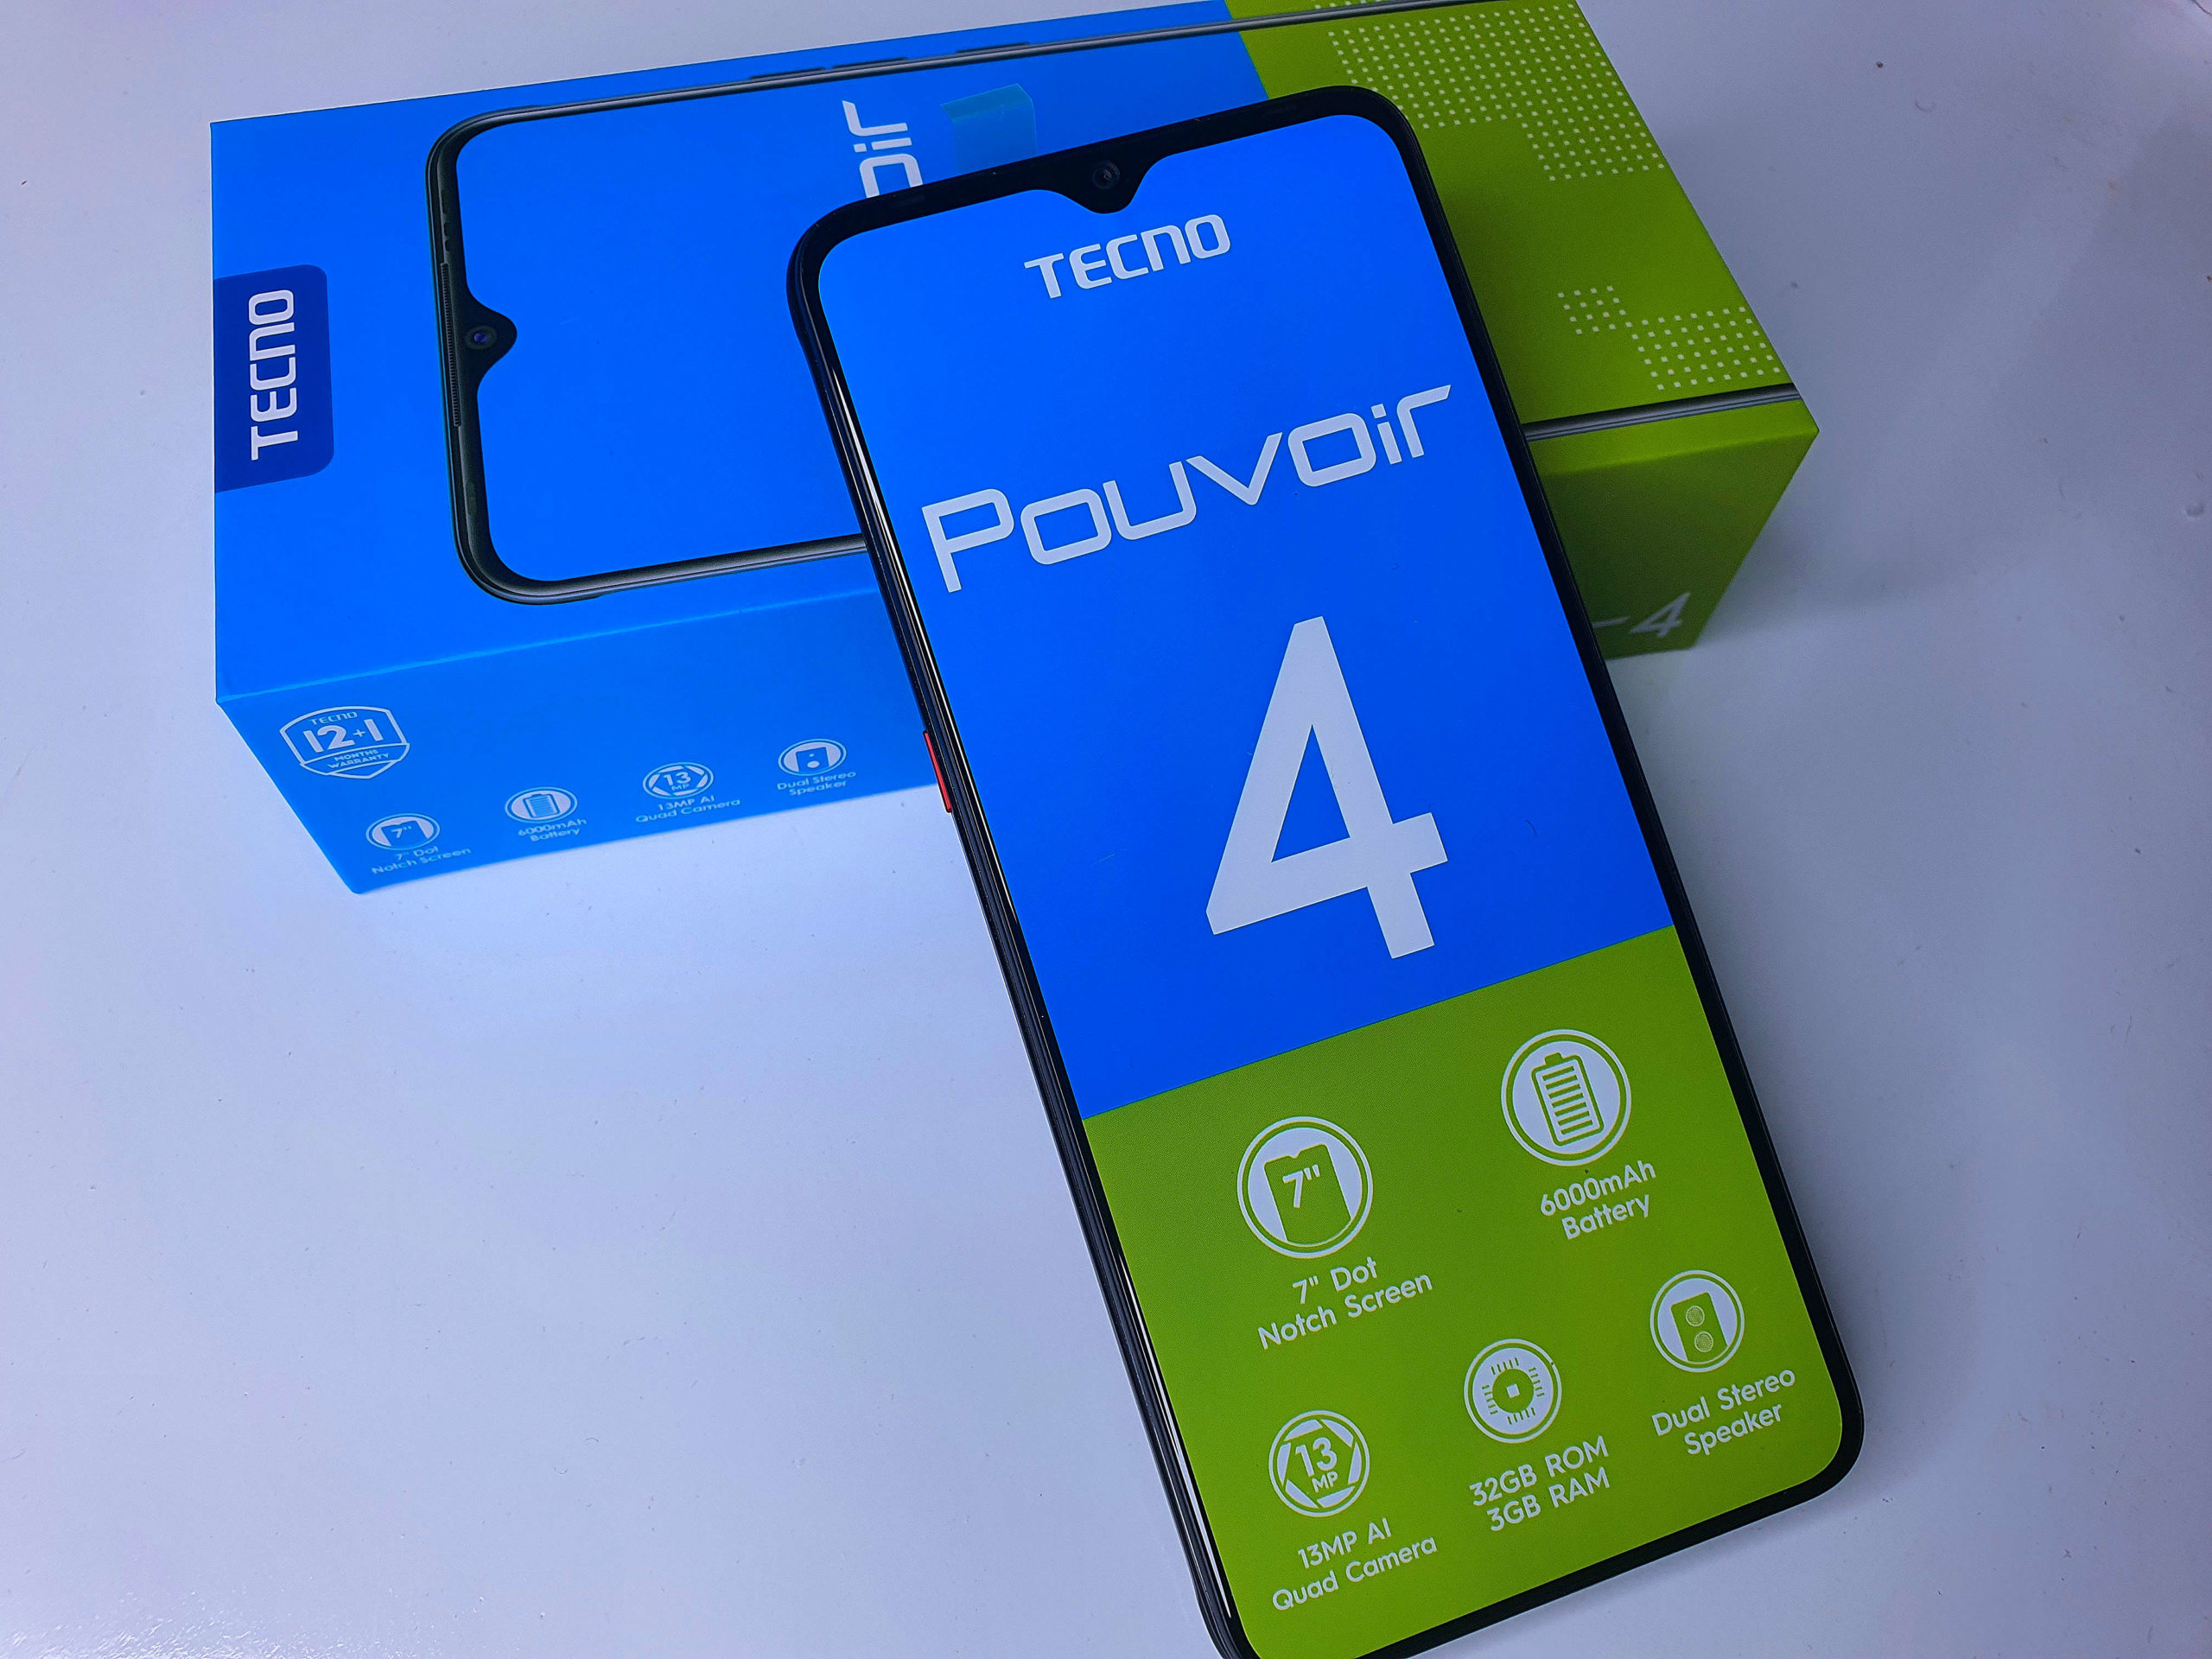 TECNO Pouvoir 4: the best features